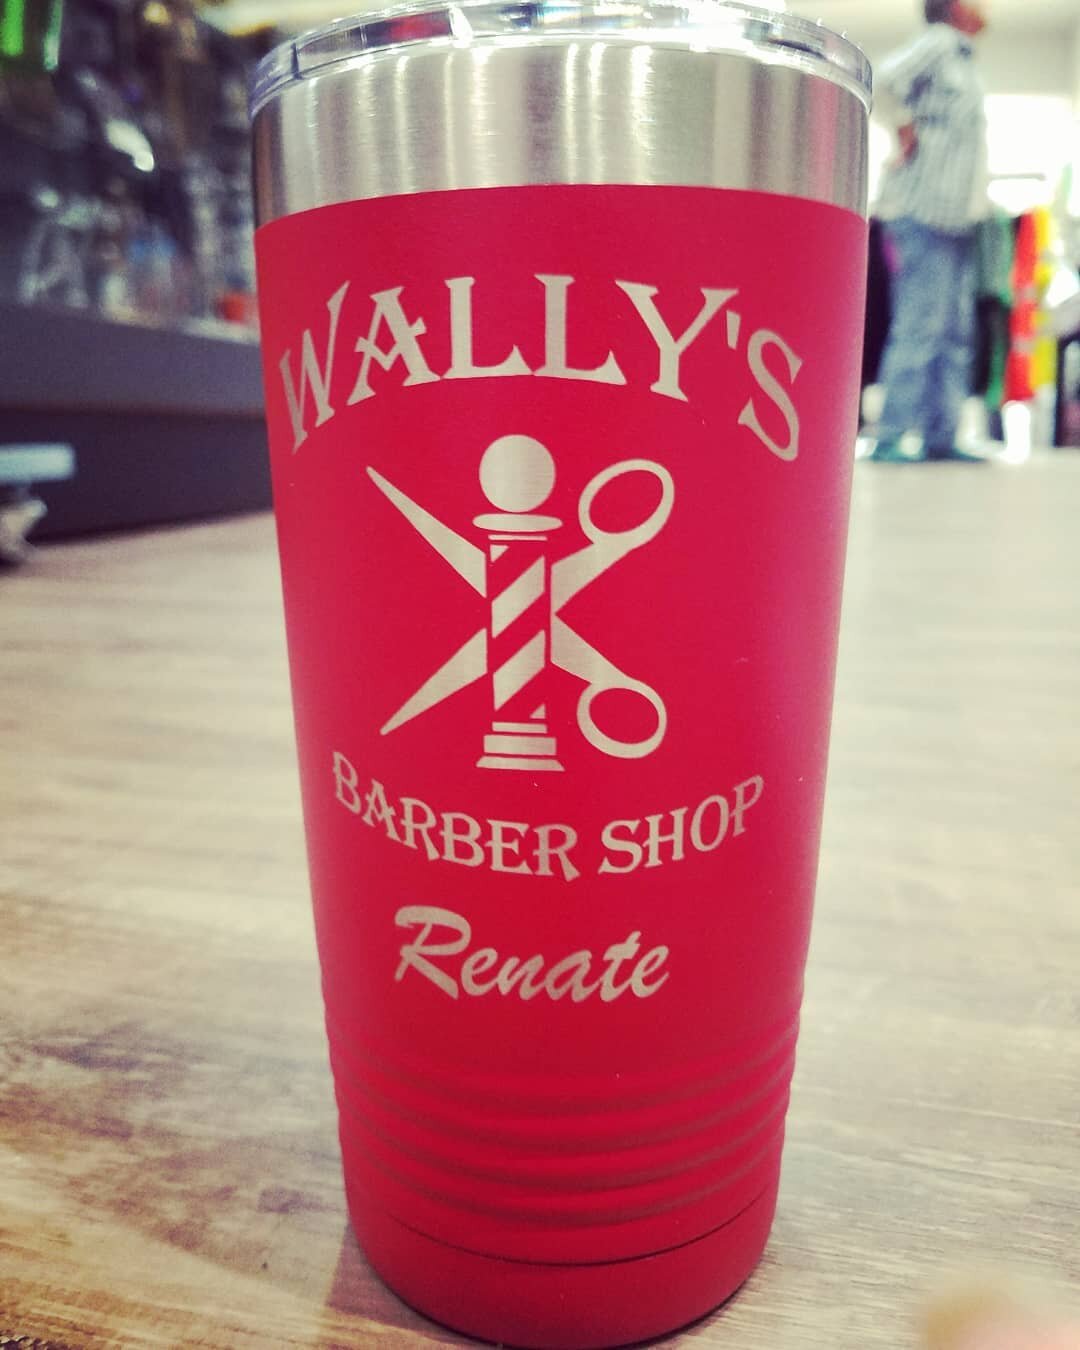 Wally's Barber Shop Laser Engraved Tumbler.jpg